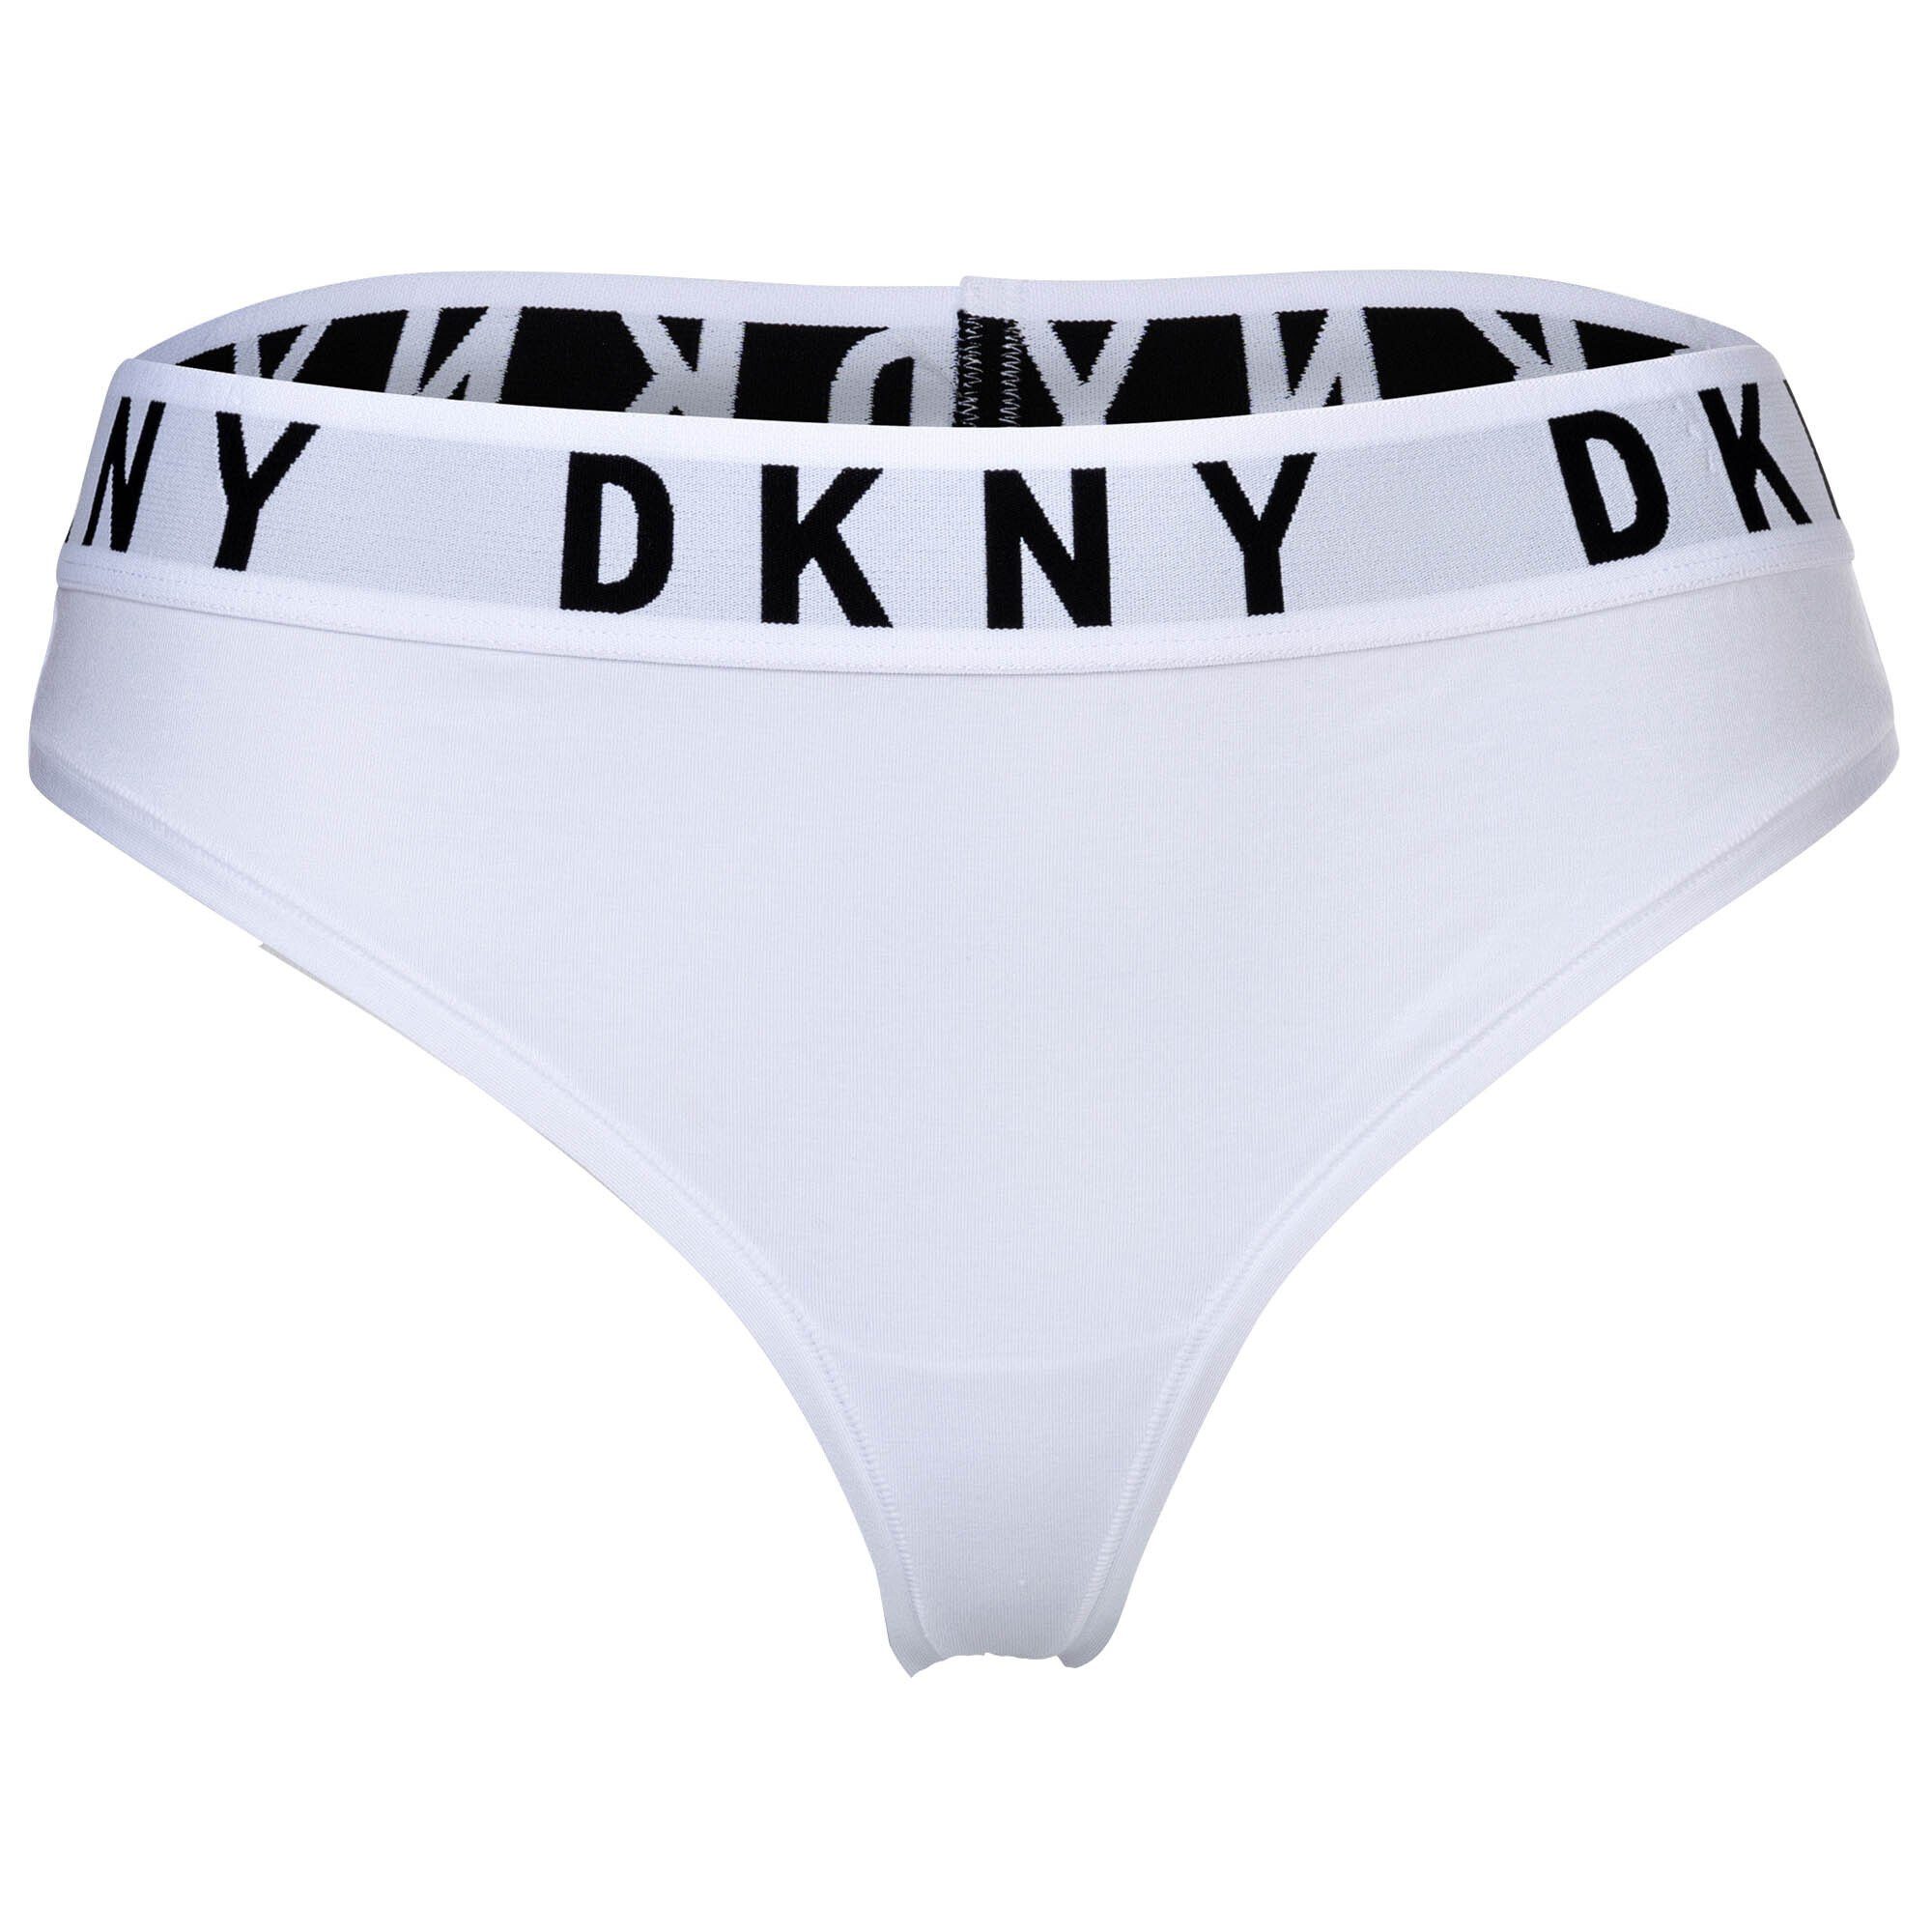 DKNY String Damen String - Tanga, Cotton Modal Stretch Weiß